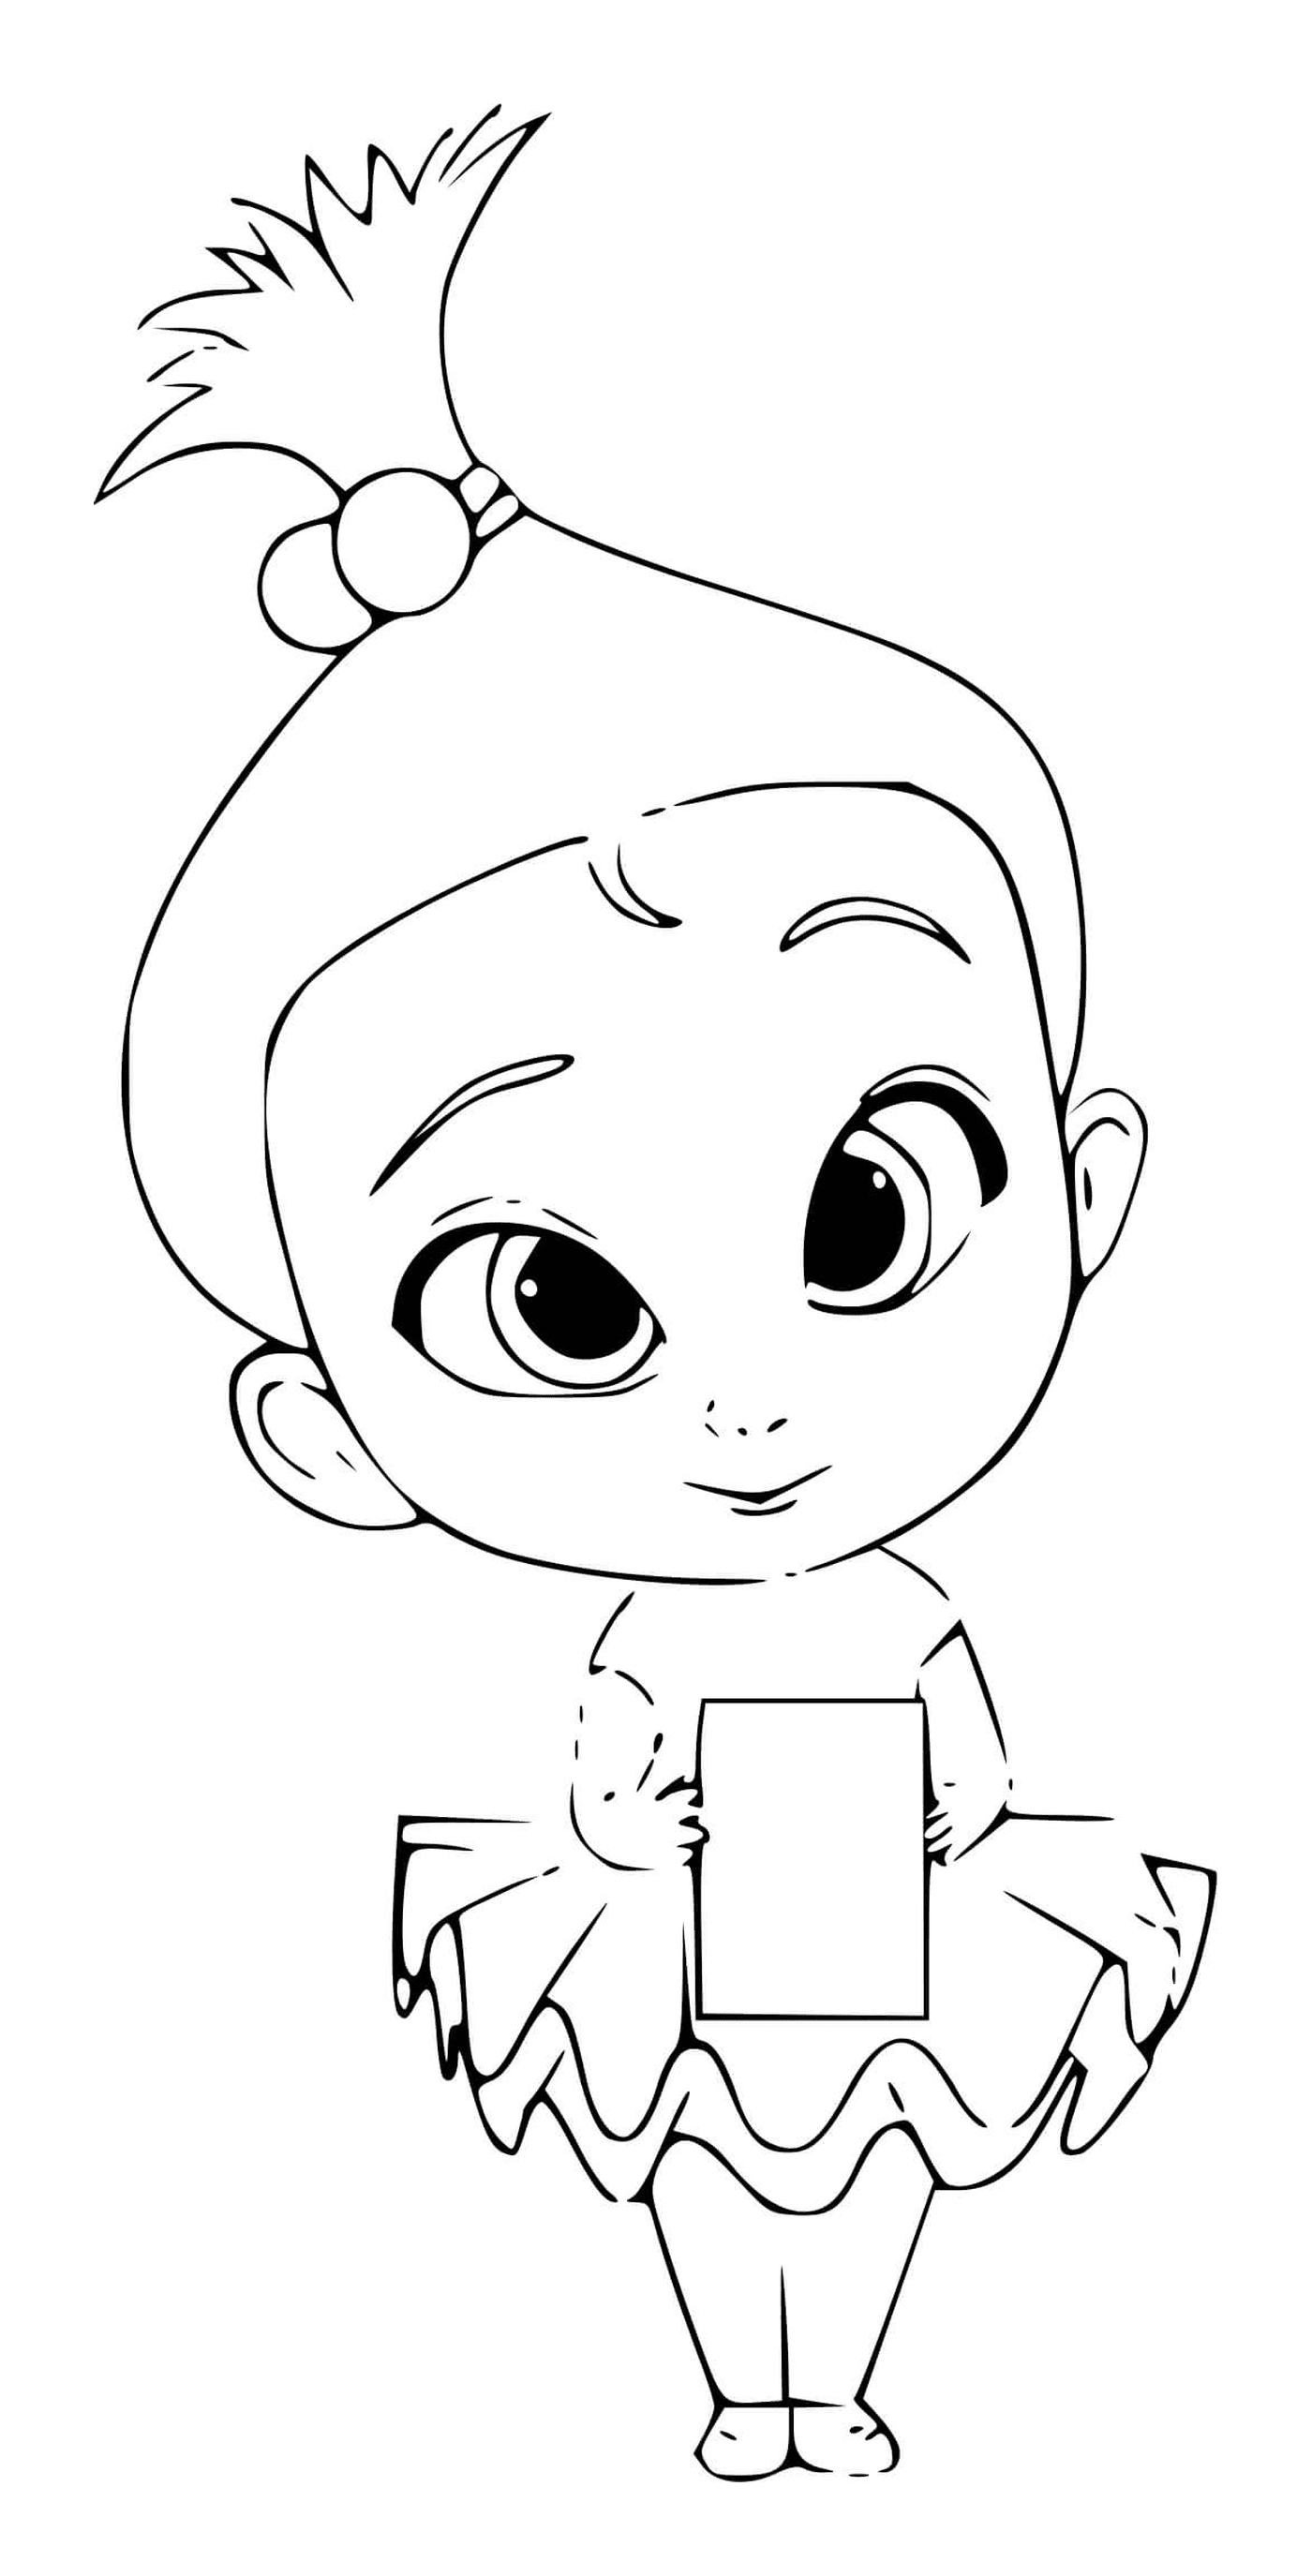  A boy holding a book 